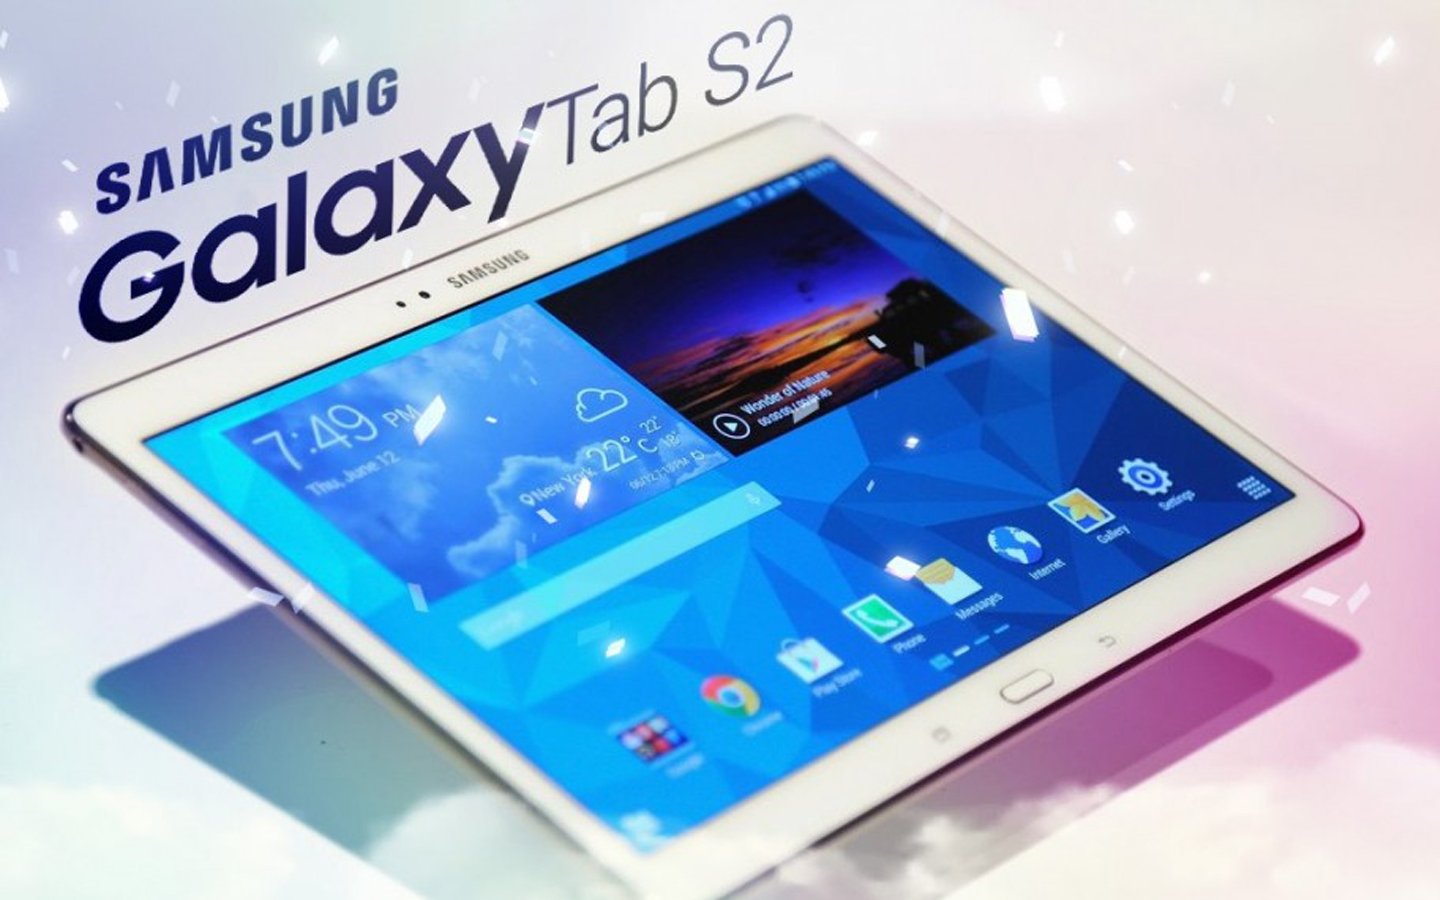 Tablette Samsung Galaxy Tab S2 : les premières images fuitent sur le web 4